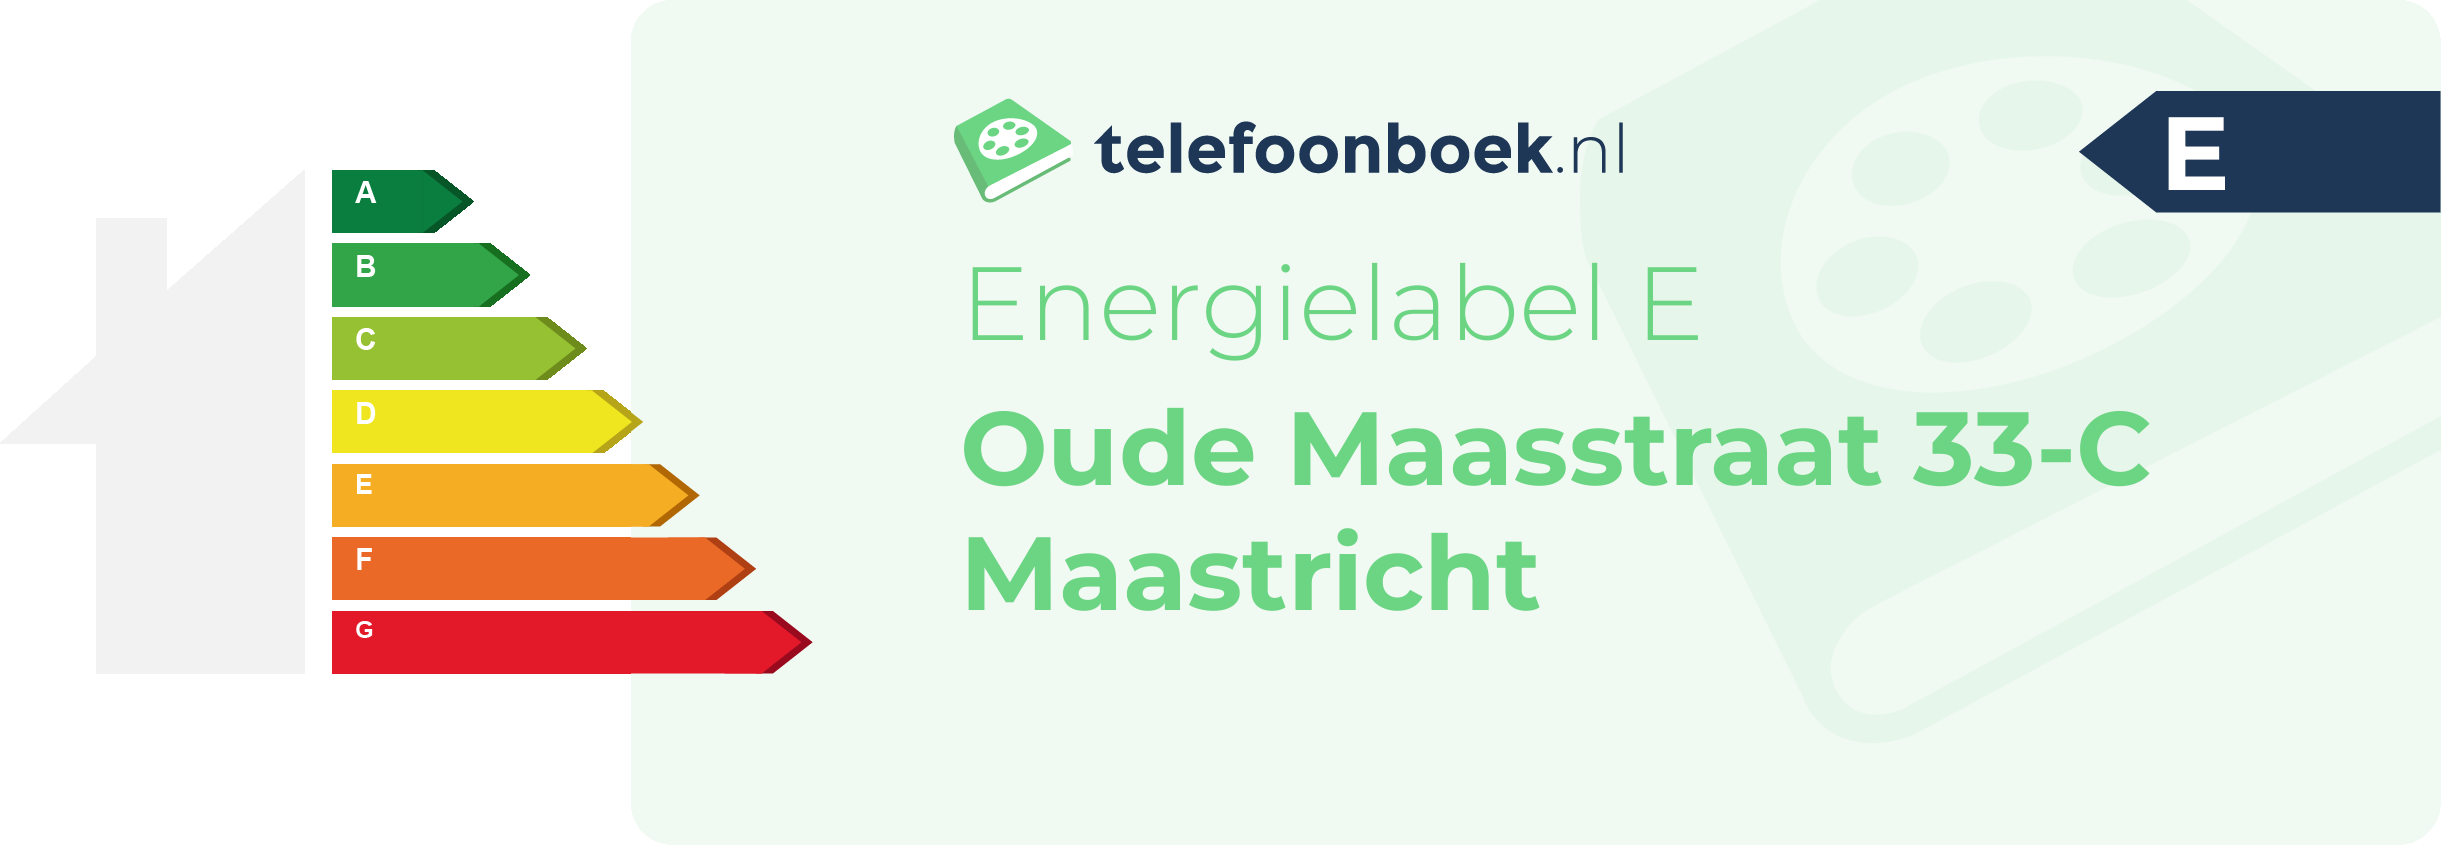 Energielabel Oude Maasstraat 33-C Maastricht